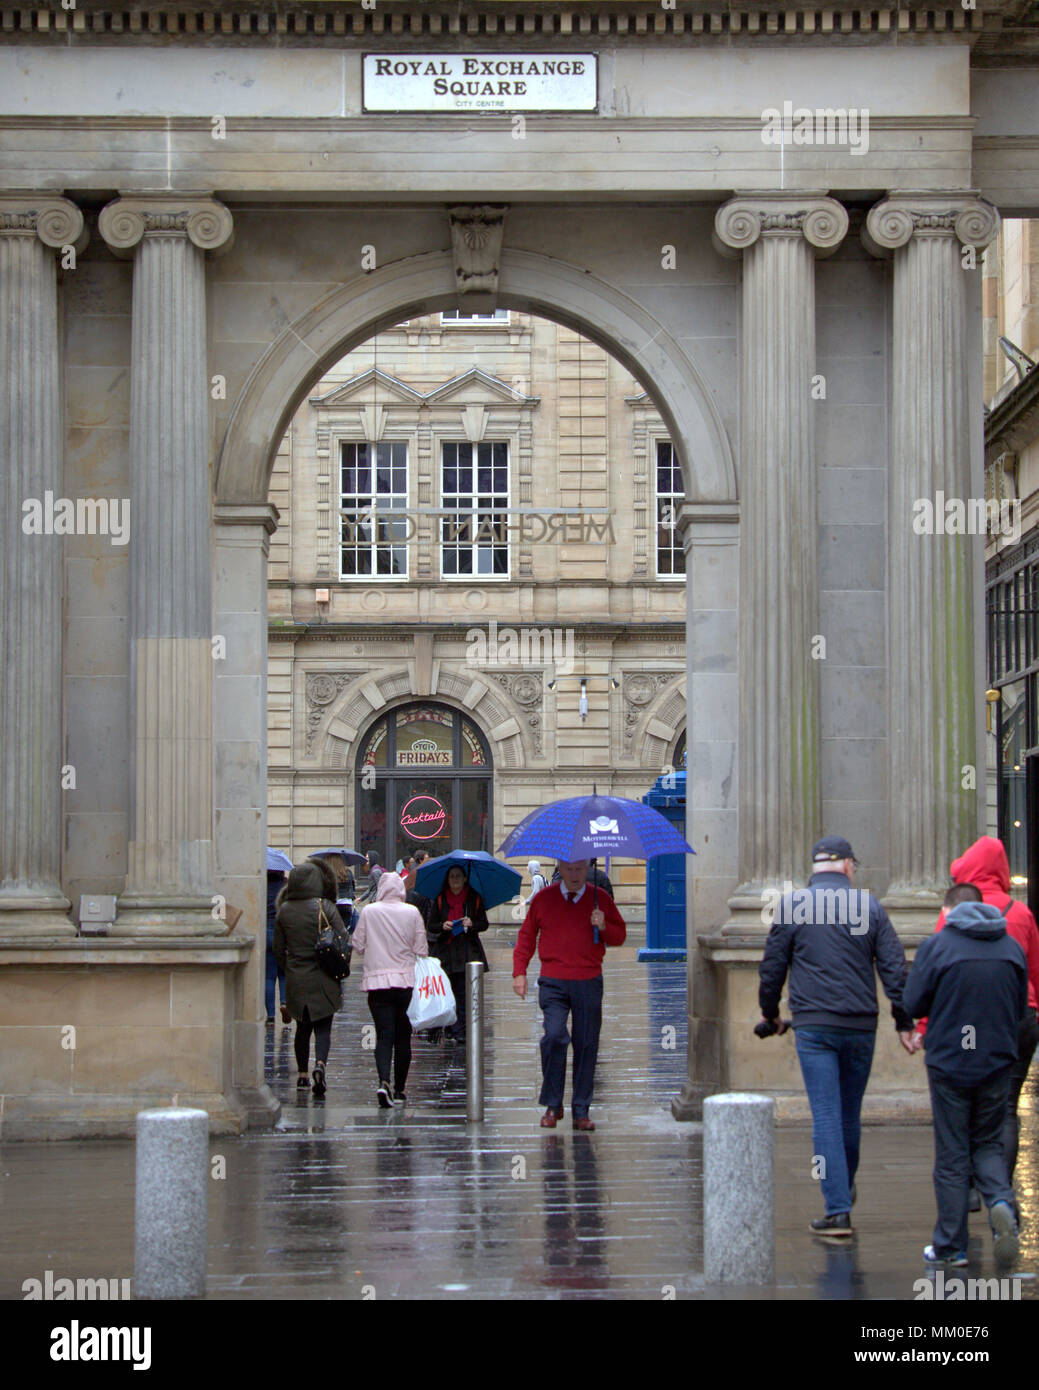 Glasgow, Schottland, Großbritannien 9. Mai. UK Wetter Regen Regen blau Regenschirm der Bogen von Royal Exchange Square im Herzen der Stadt bietet wenig für den Touristen so stumpf nasses Wetter zieht nach dem heißen Bank Urlaub.. Gerard Fähre / alamy Nachrichten Stockfoto